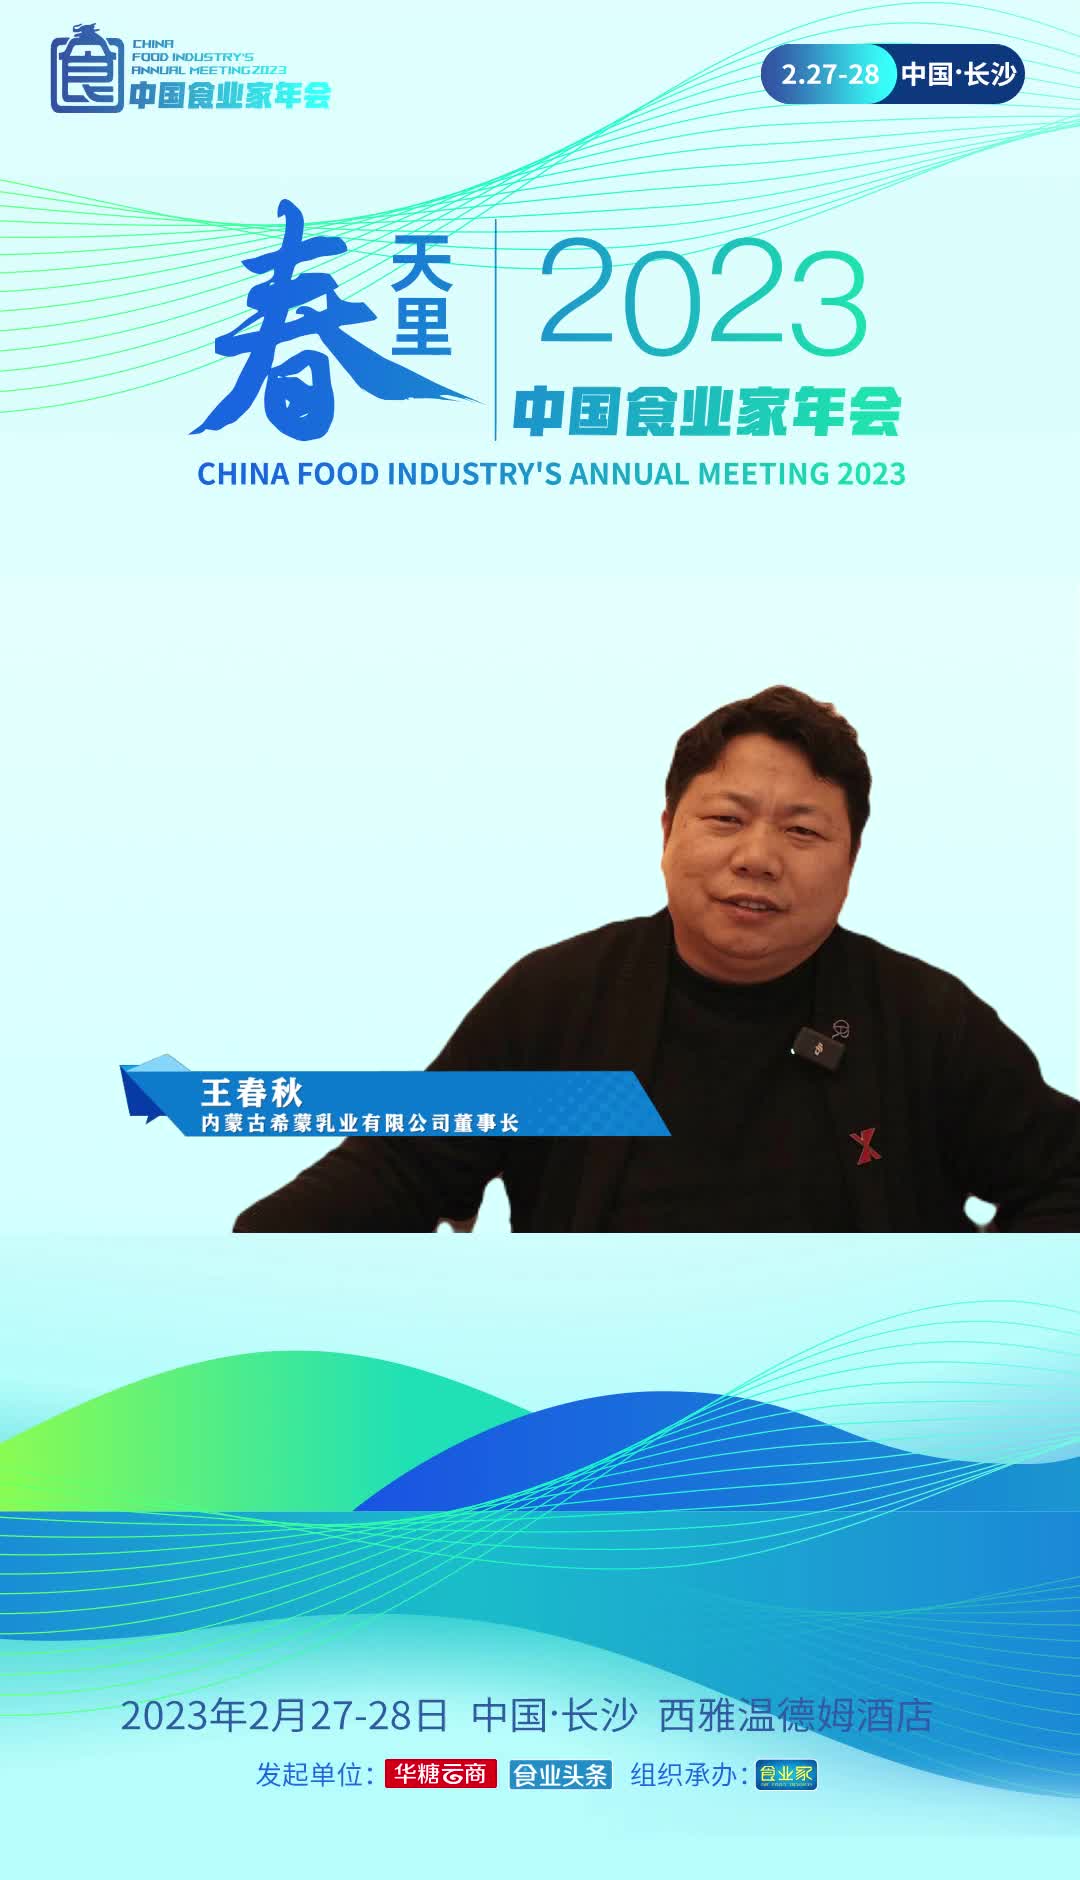 内蒙古希蒙乳业有限公司董事长王春秋认为，2023将是消费大年，各个行业特别是餐饮业将迎来爆火